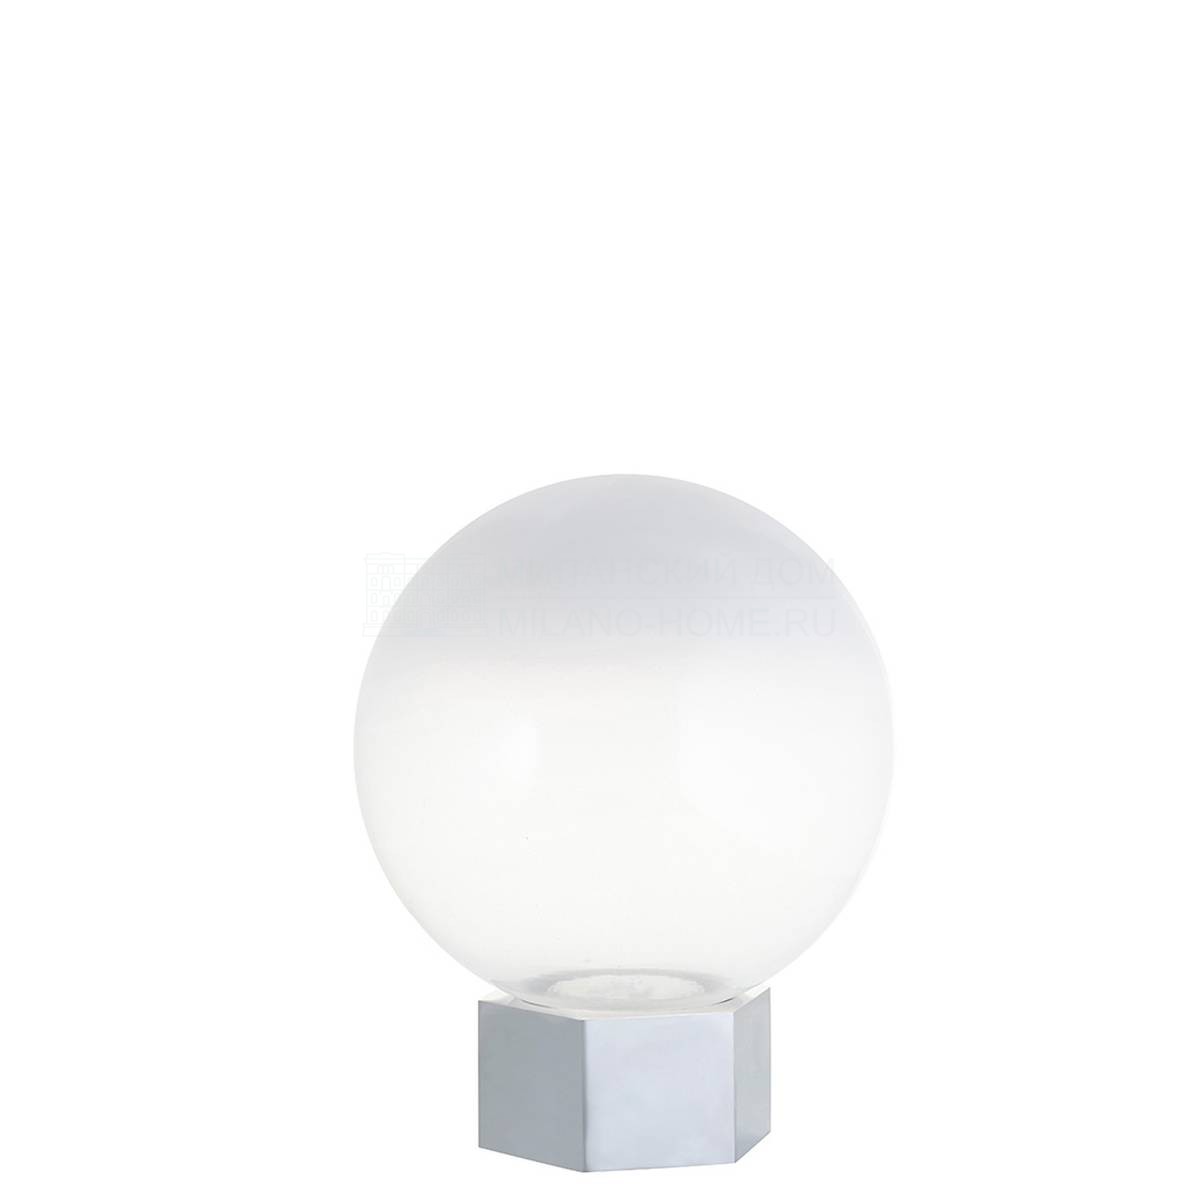 Настольная лампа Lampe globe range gm metal из Франции фабрики FORESTIER